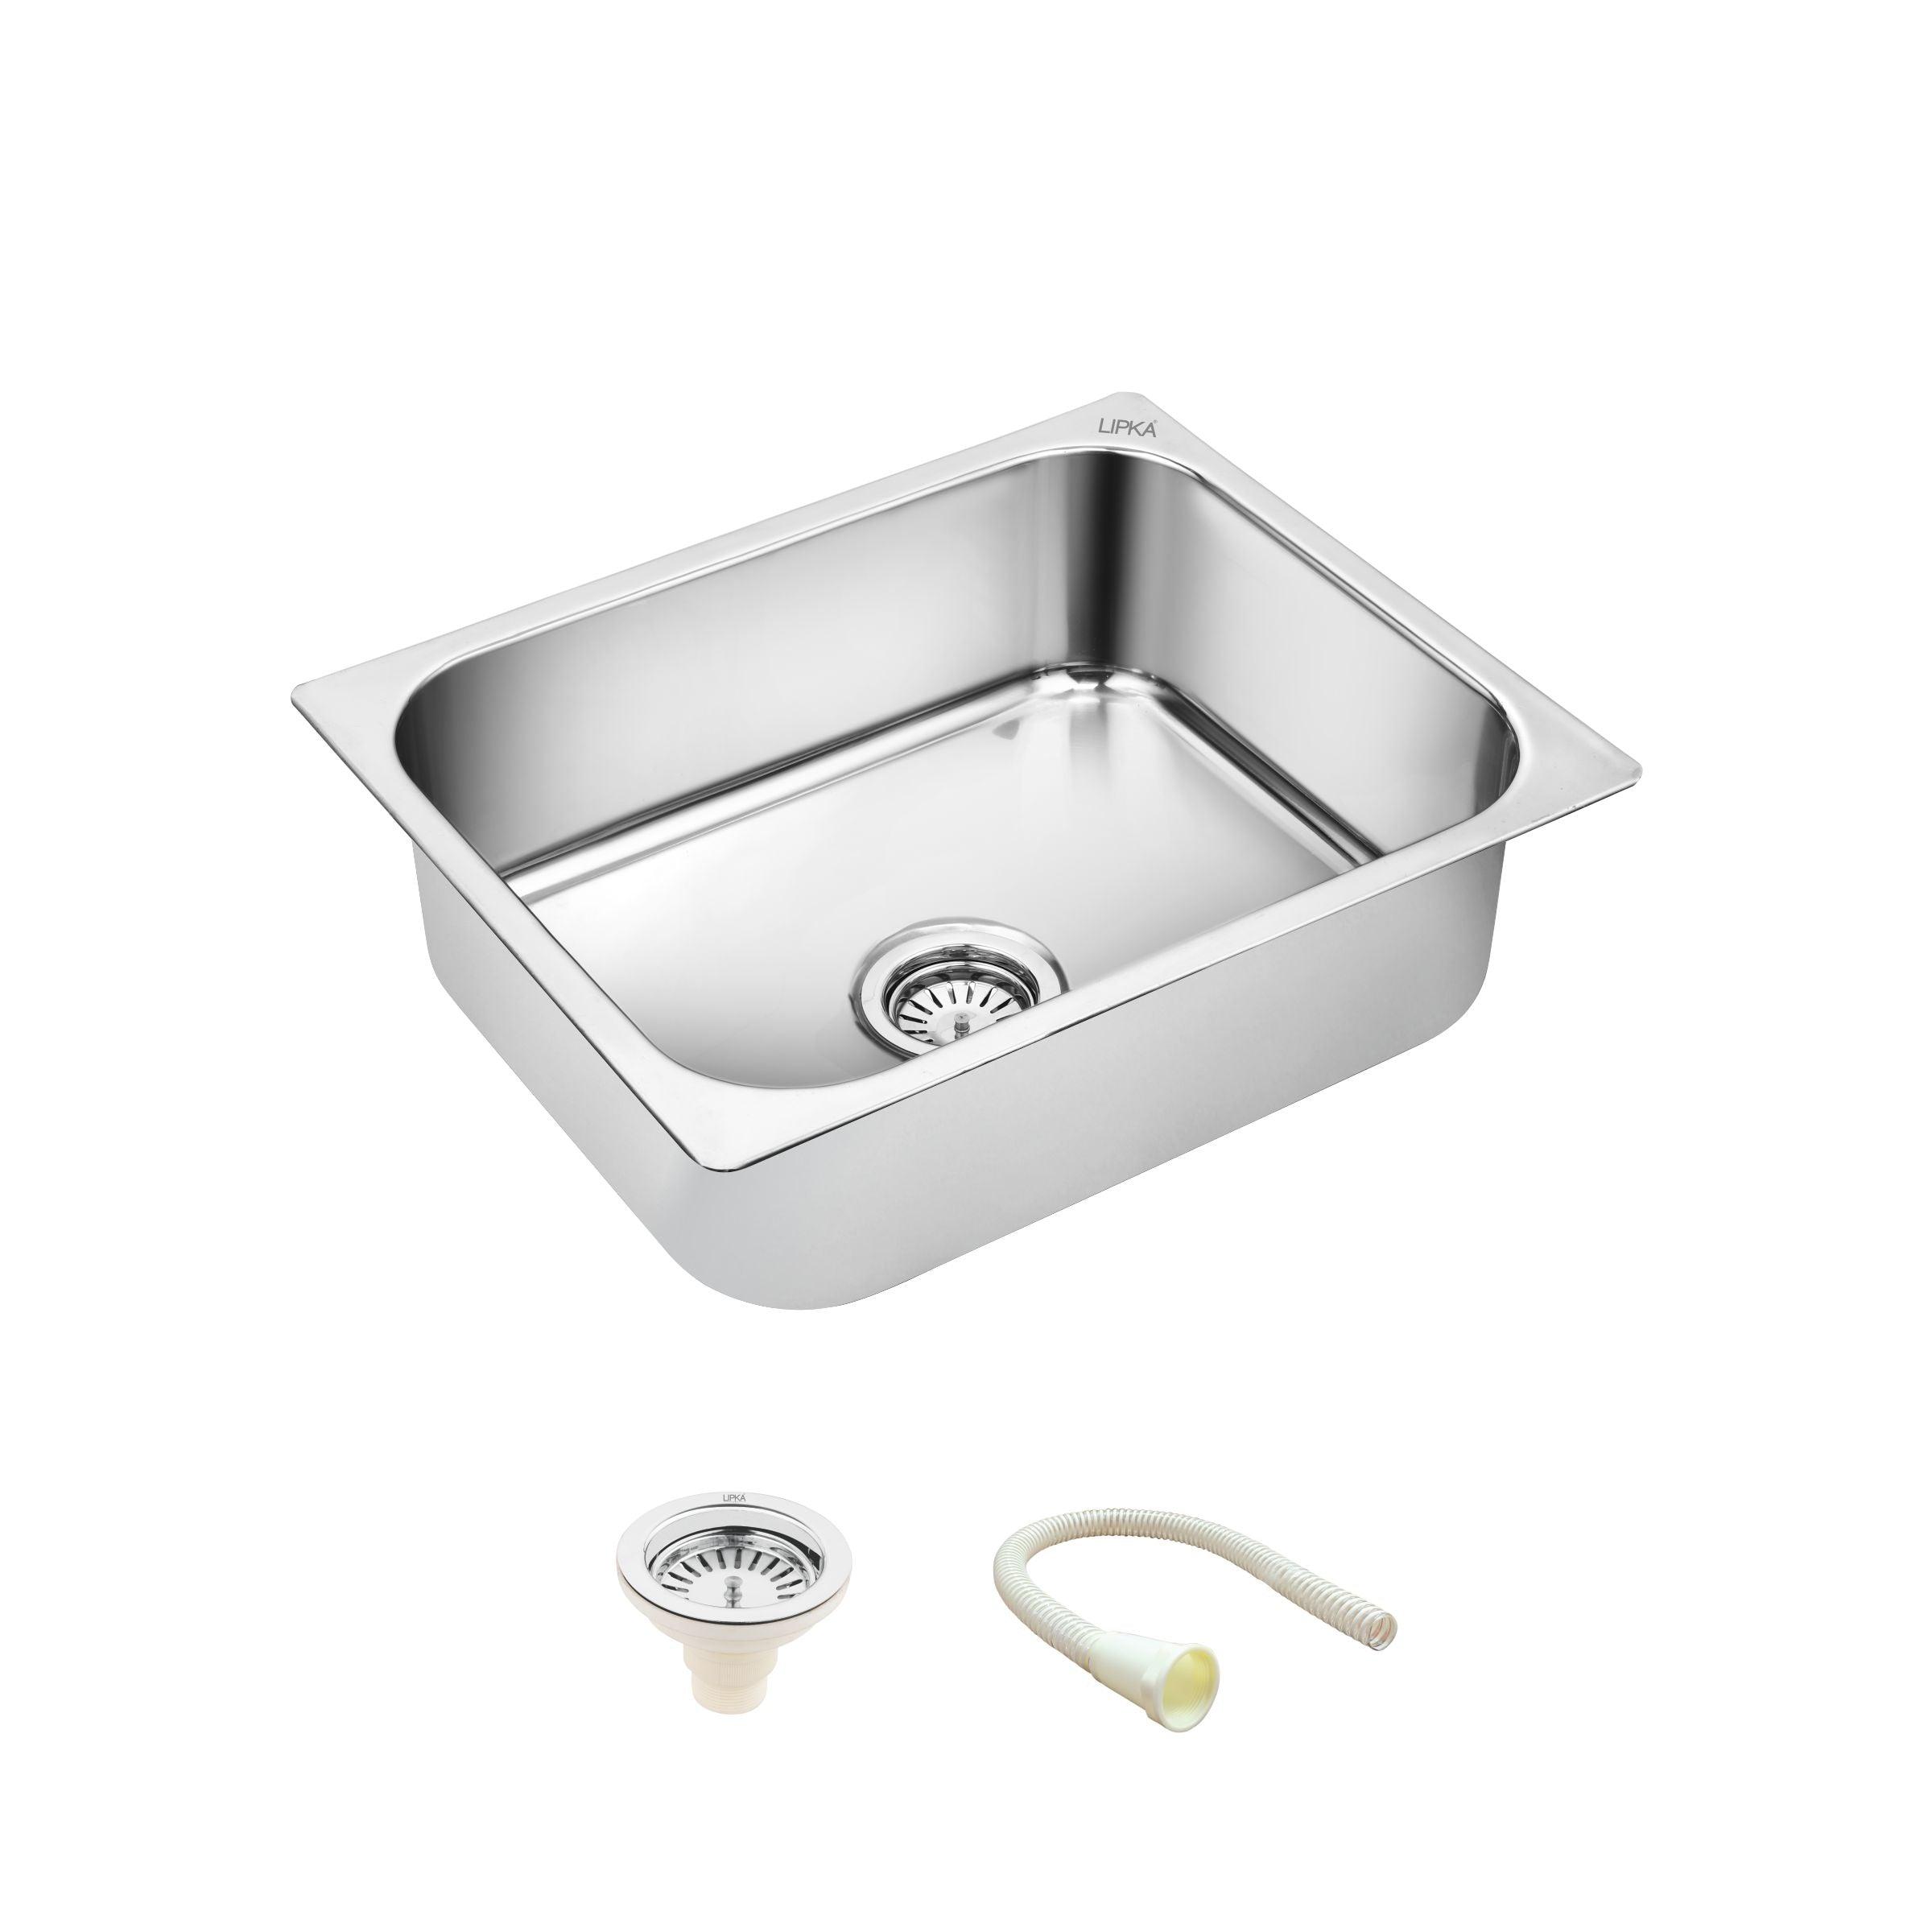 Square Single Bowl 304-Grade Kitchen Sink (27 x 21 x 9 Inches) - LIPKA - Lipka Home